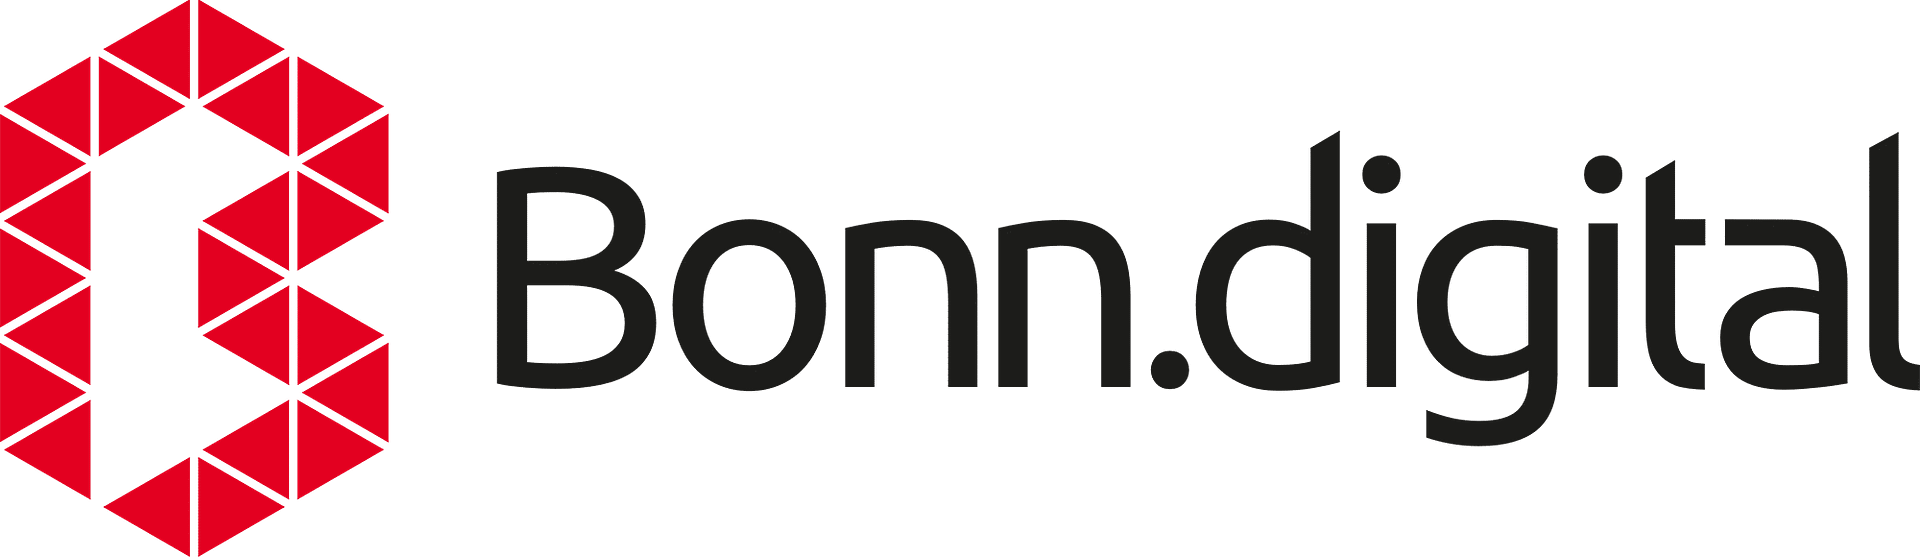 Bonndigital-Logo_black_2000px